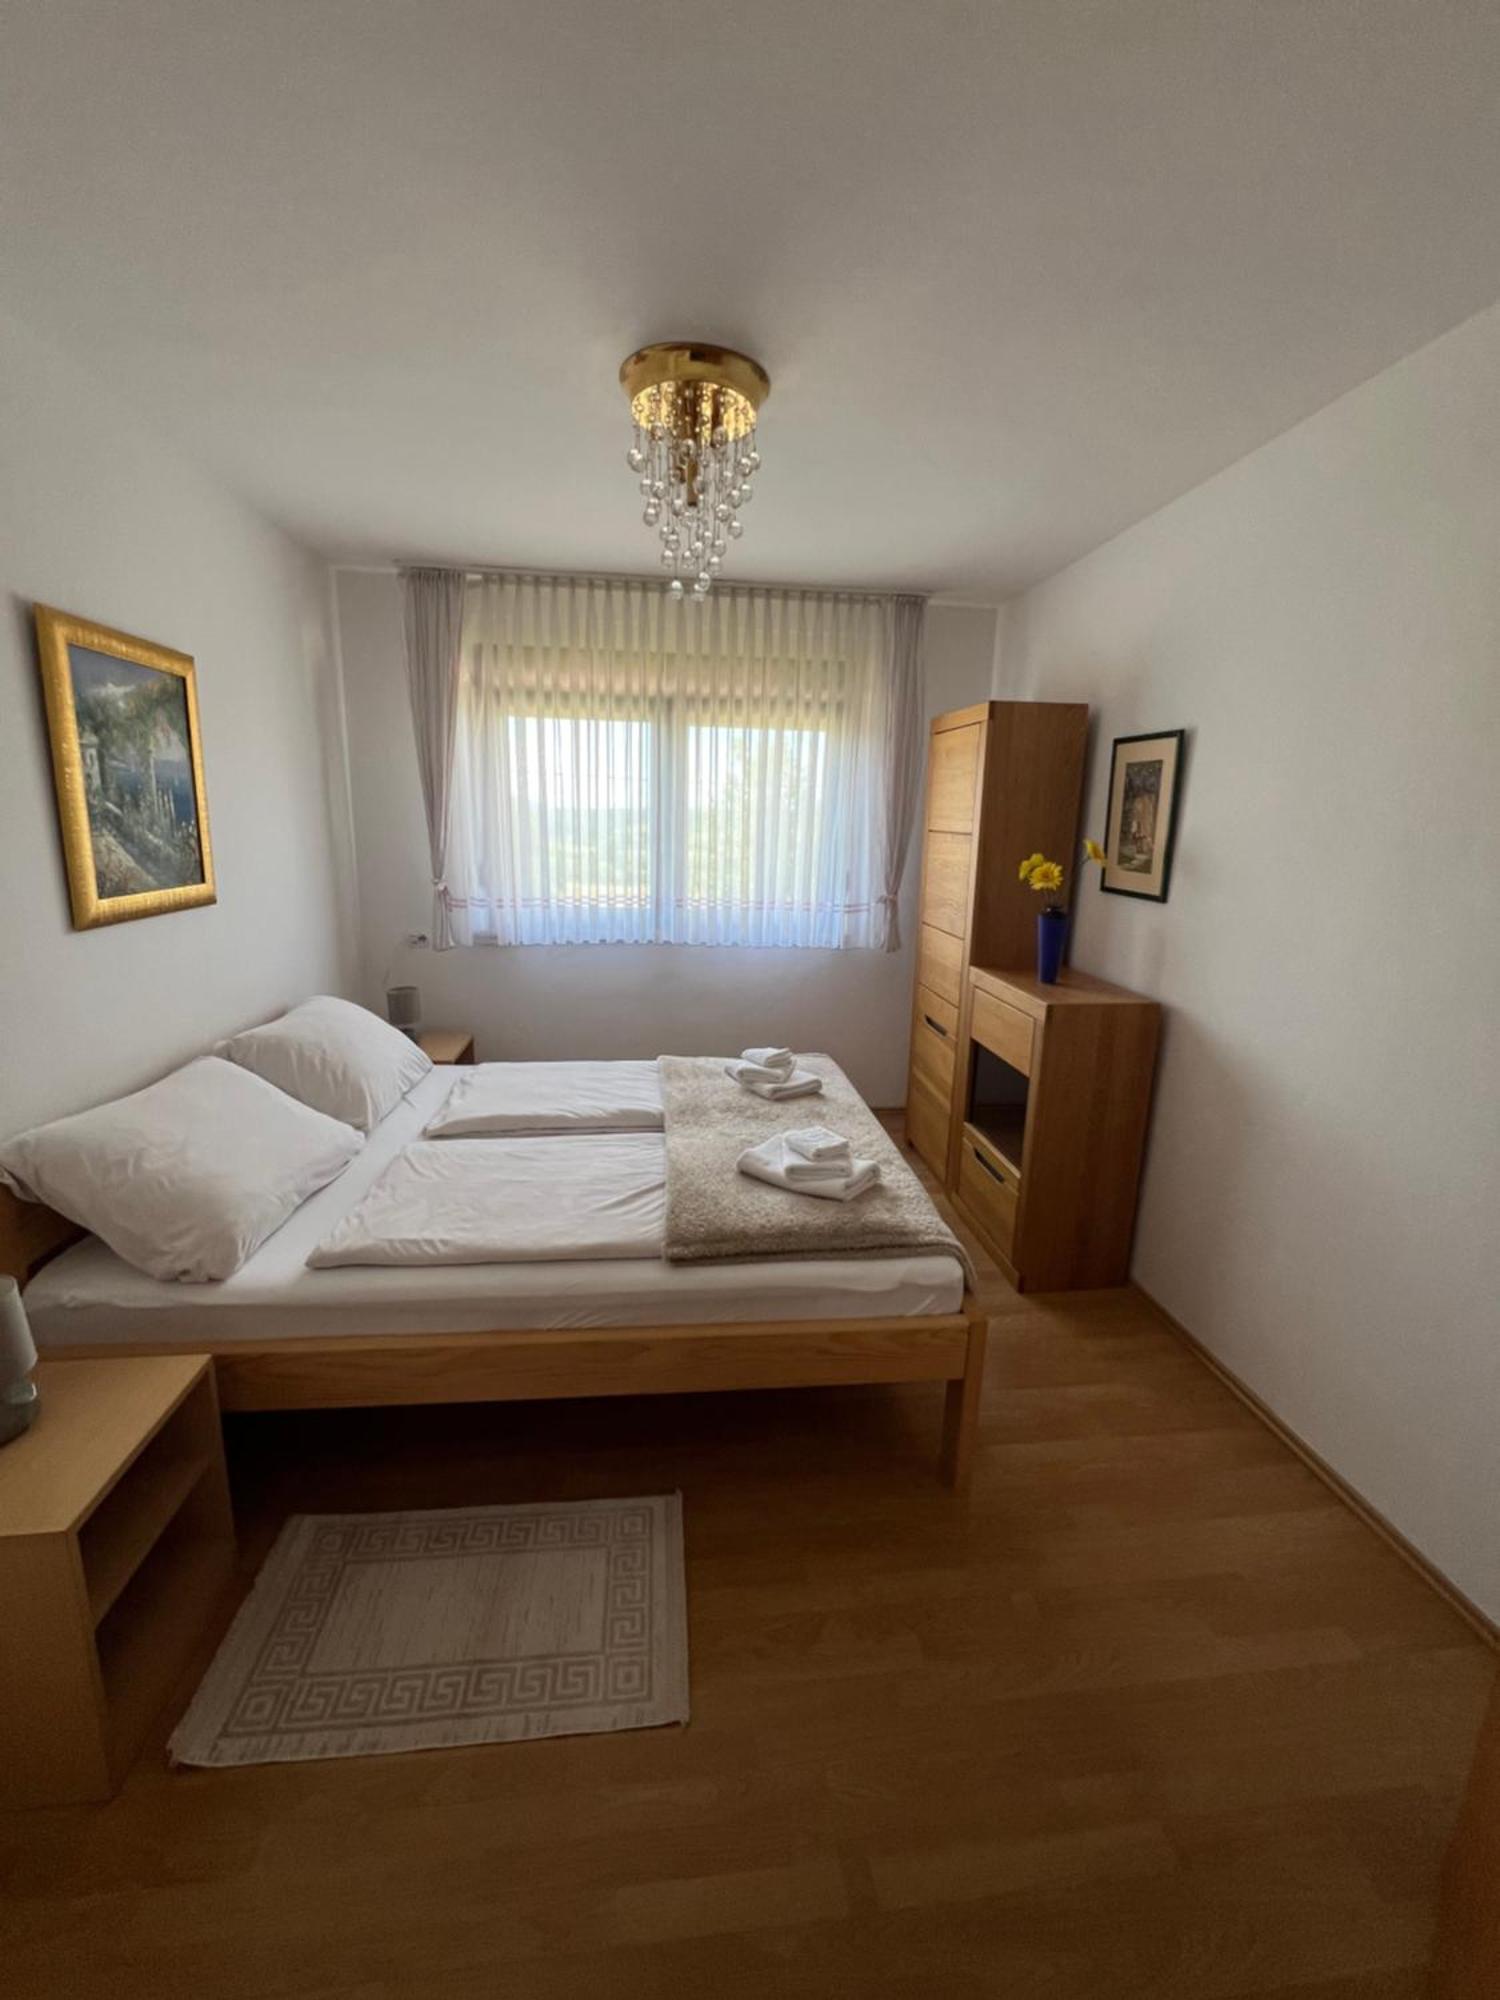 Anamarija Apartments Self Check In, Check Out Licko Petrovo Selo Exterior foto